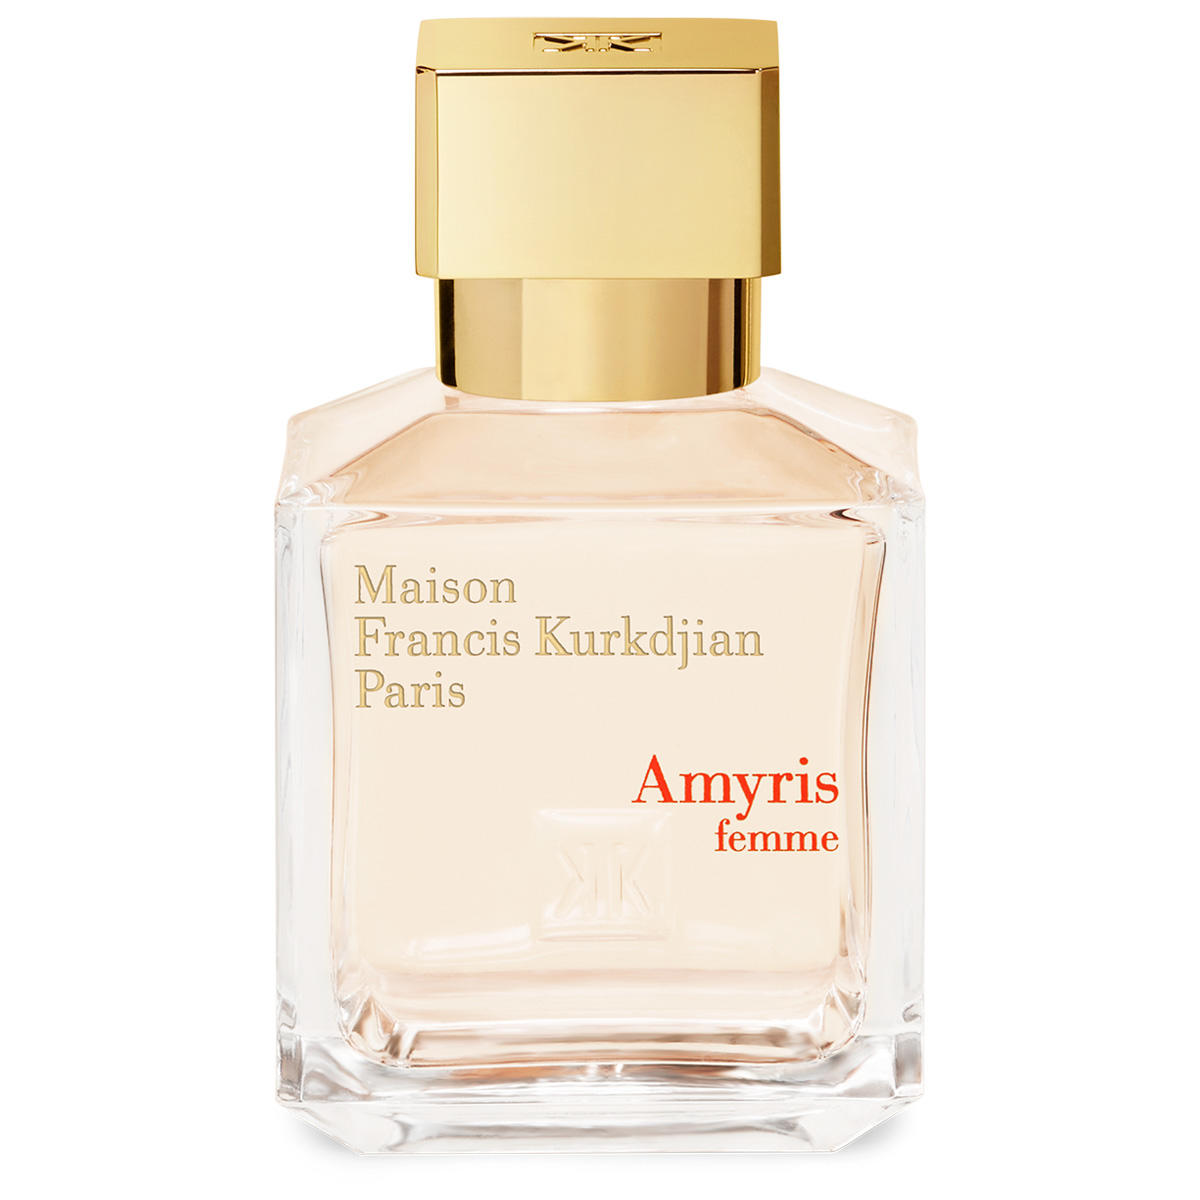 Maison Francis Kurkdjian Paris Amyris femme Eau de Parfum 70 ml - 1